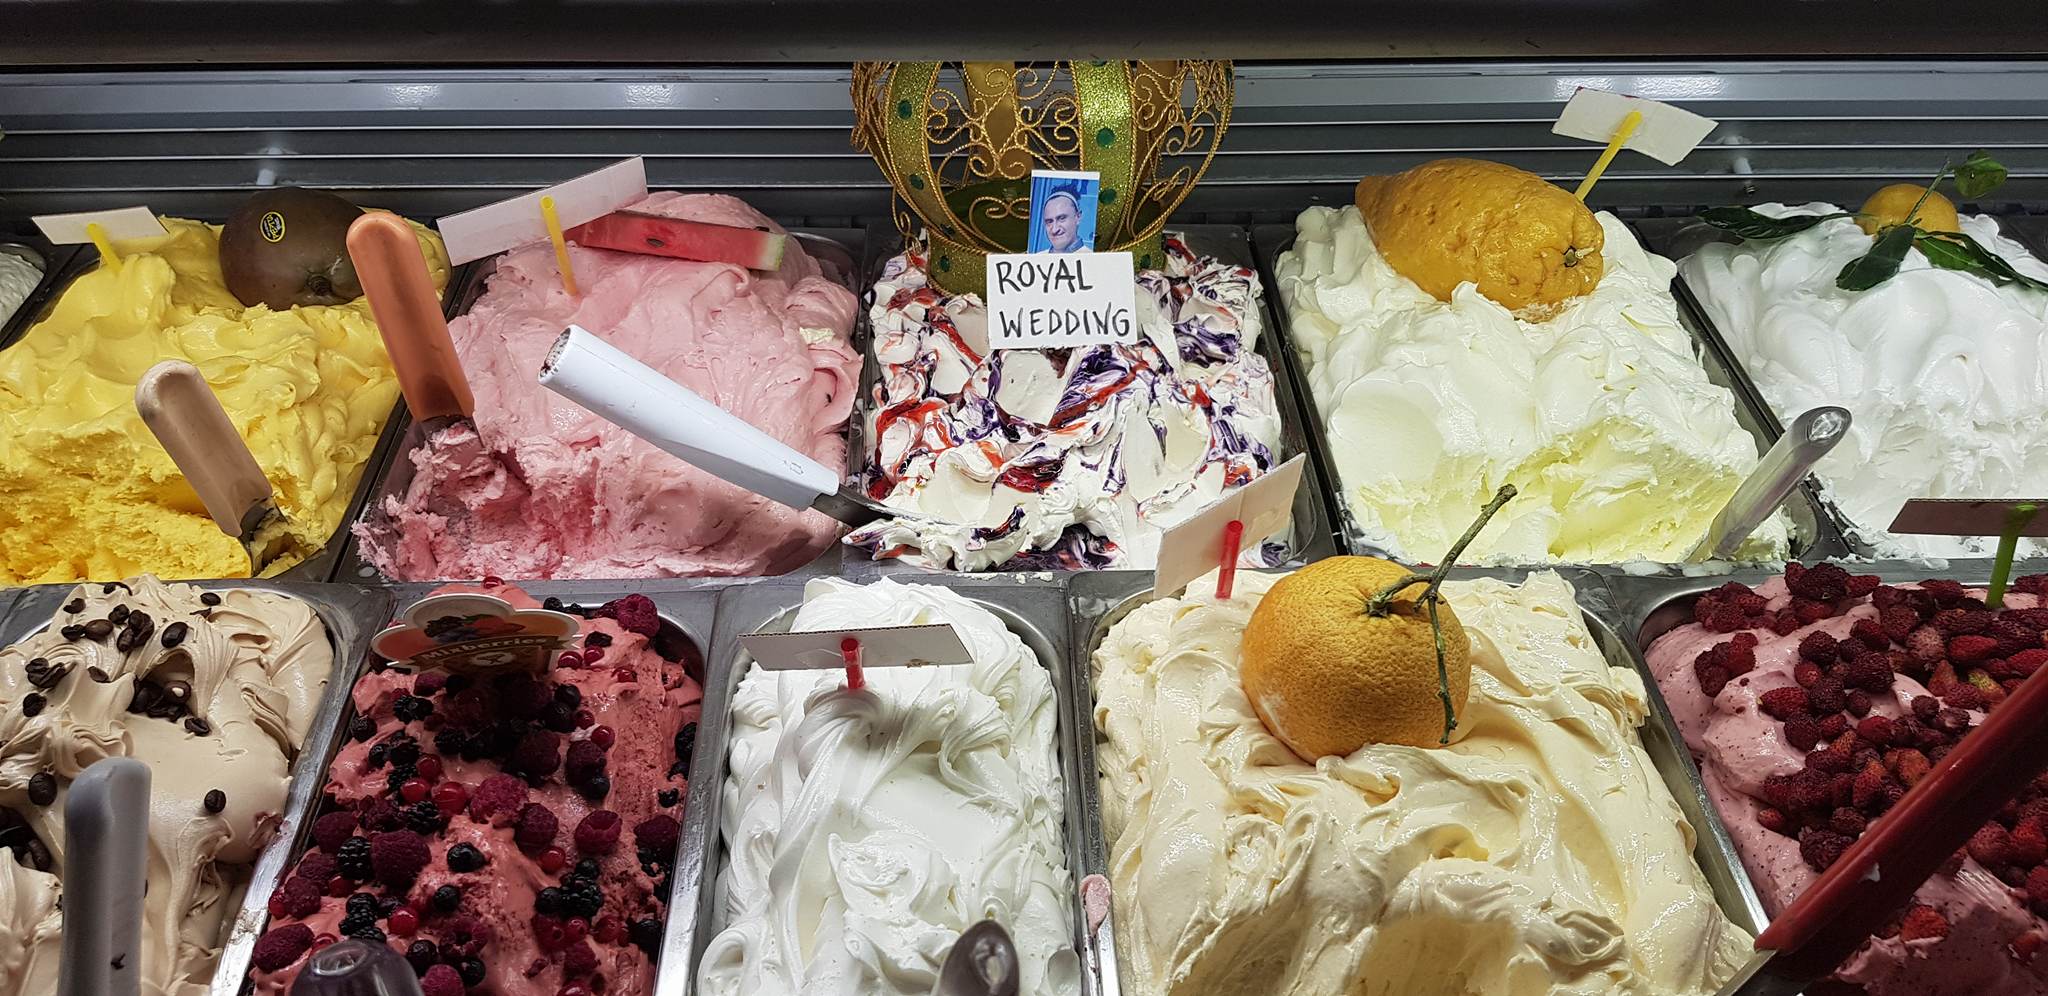  Il pasticciere sorrentino Antonio Cafiero rende omaggio al Royal wedding con un ice cream all’insegna del gusto 